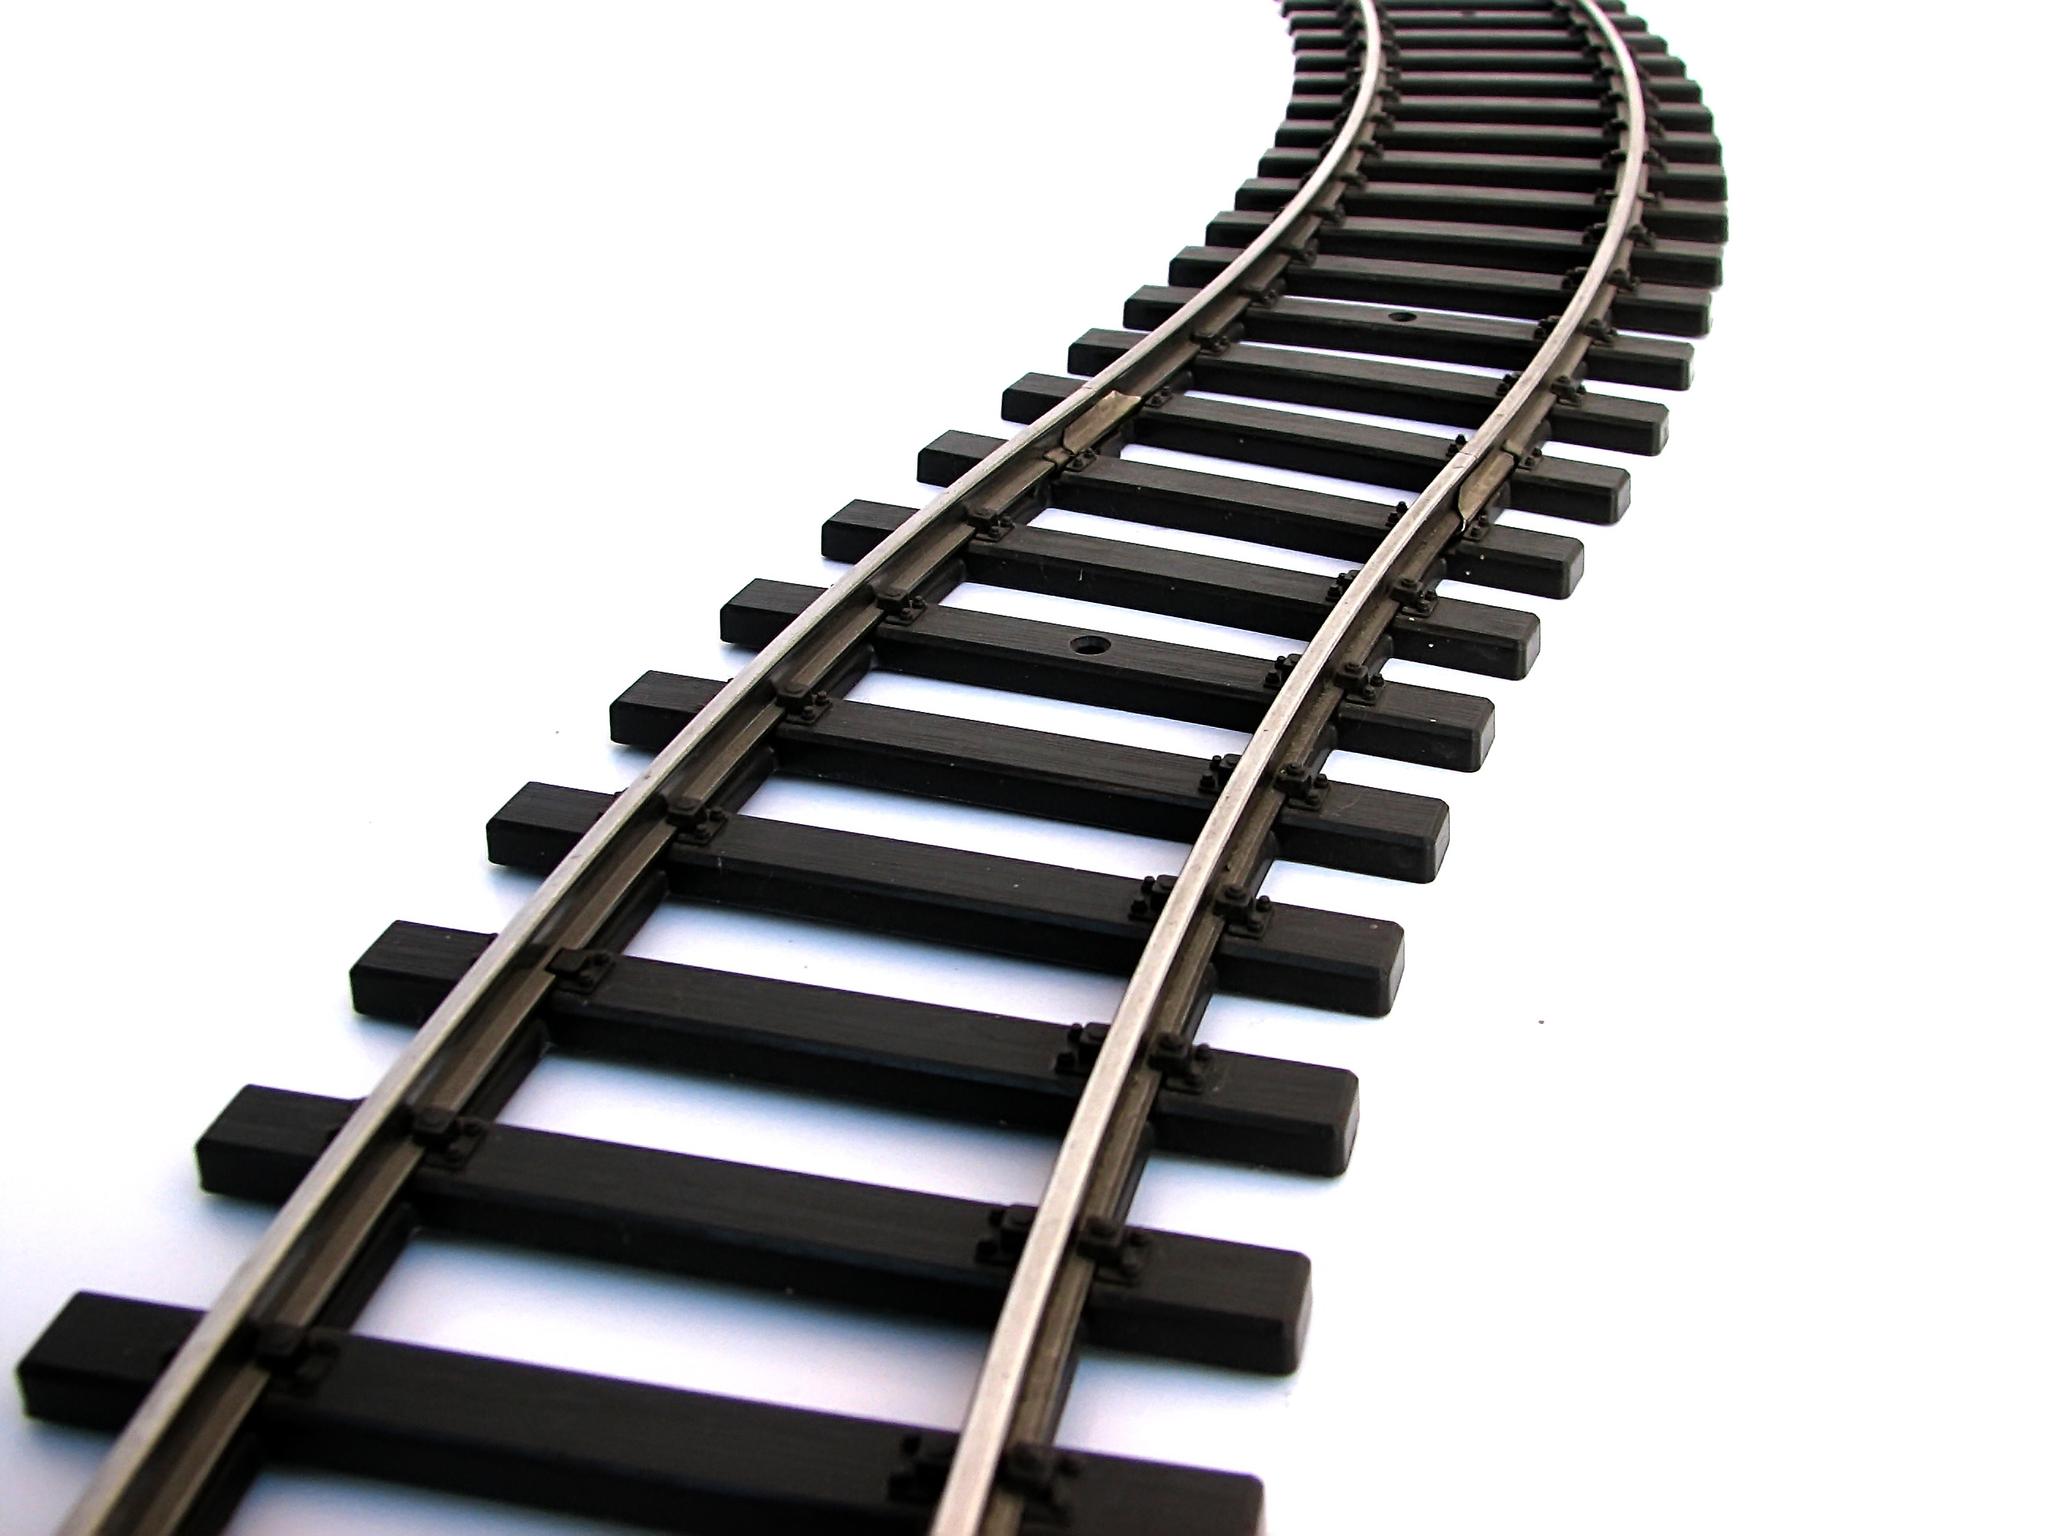 Train Track Clipart - Tumundografico